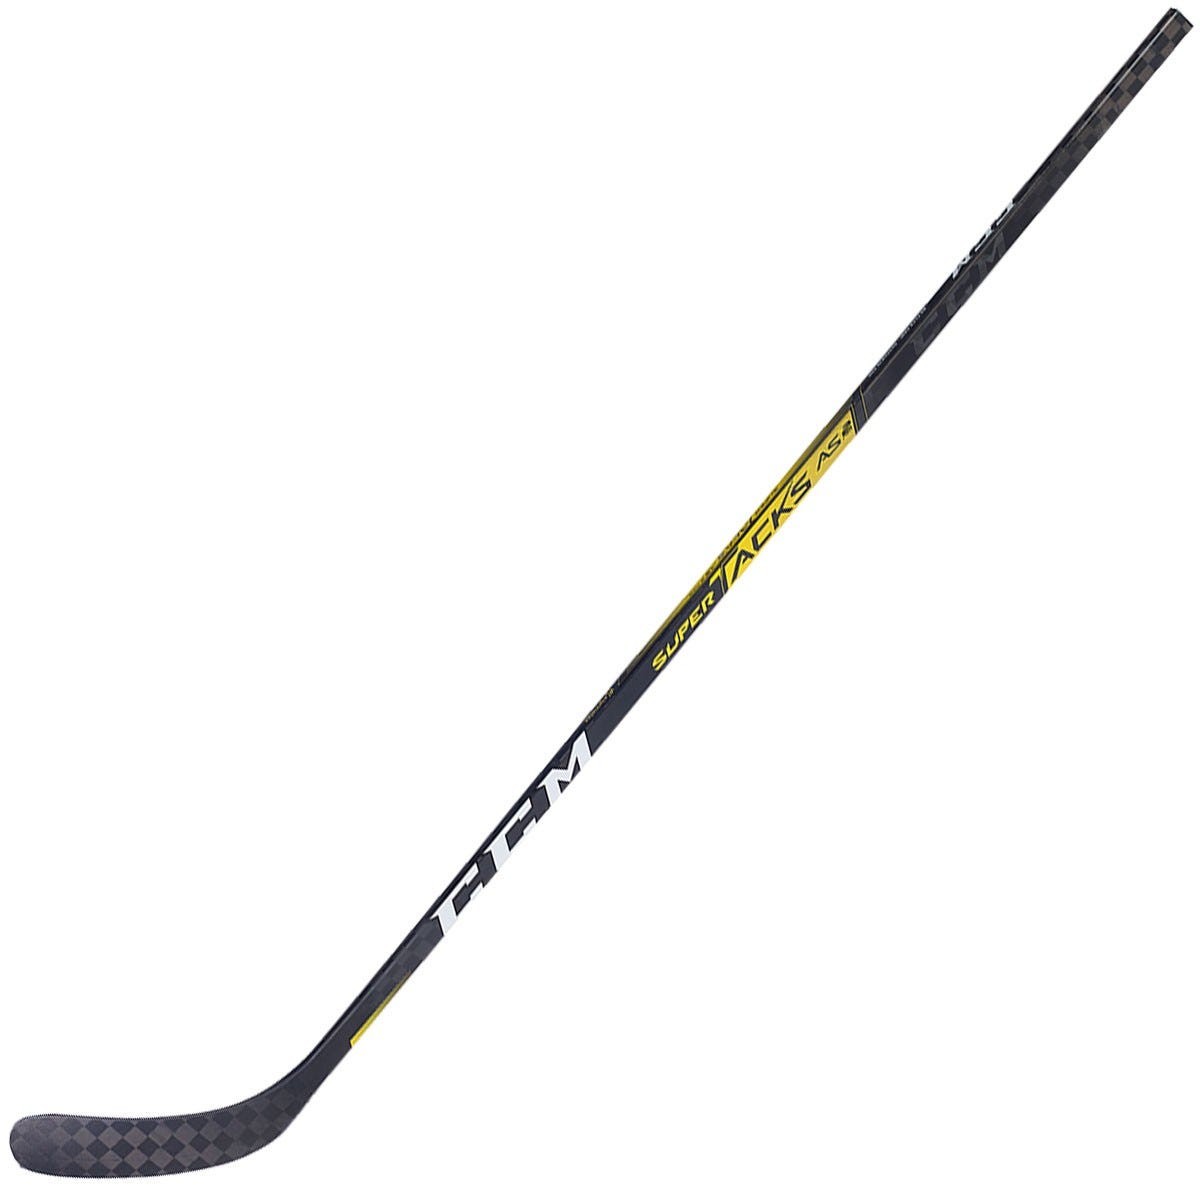 CCM Super Tacks AS2 Pro Senior Composite Hockey Stick